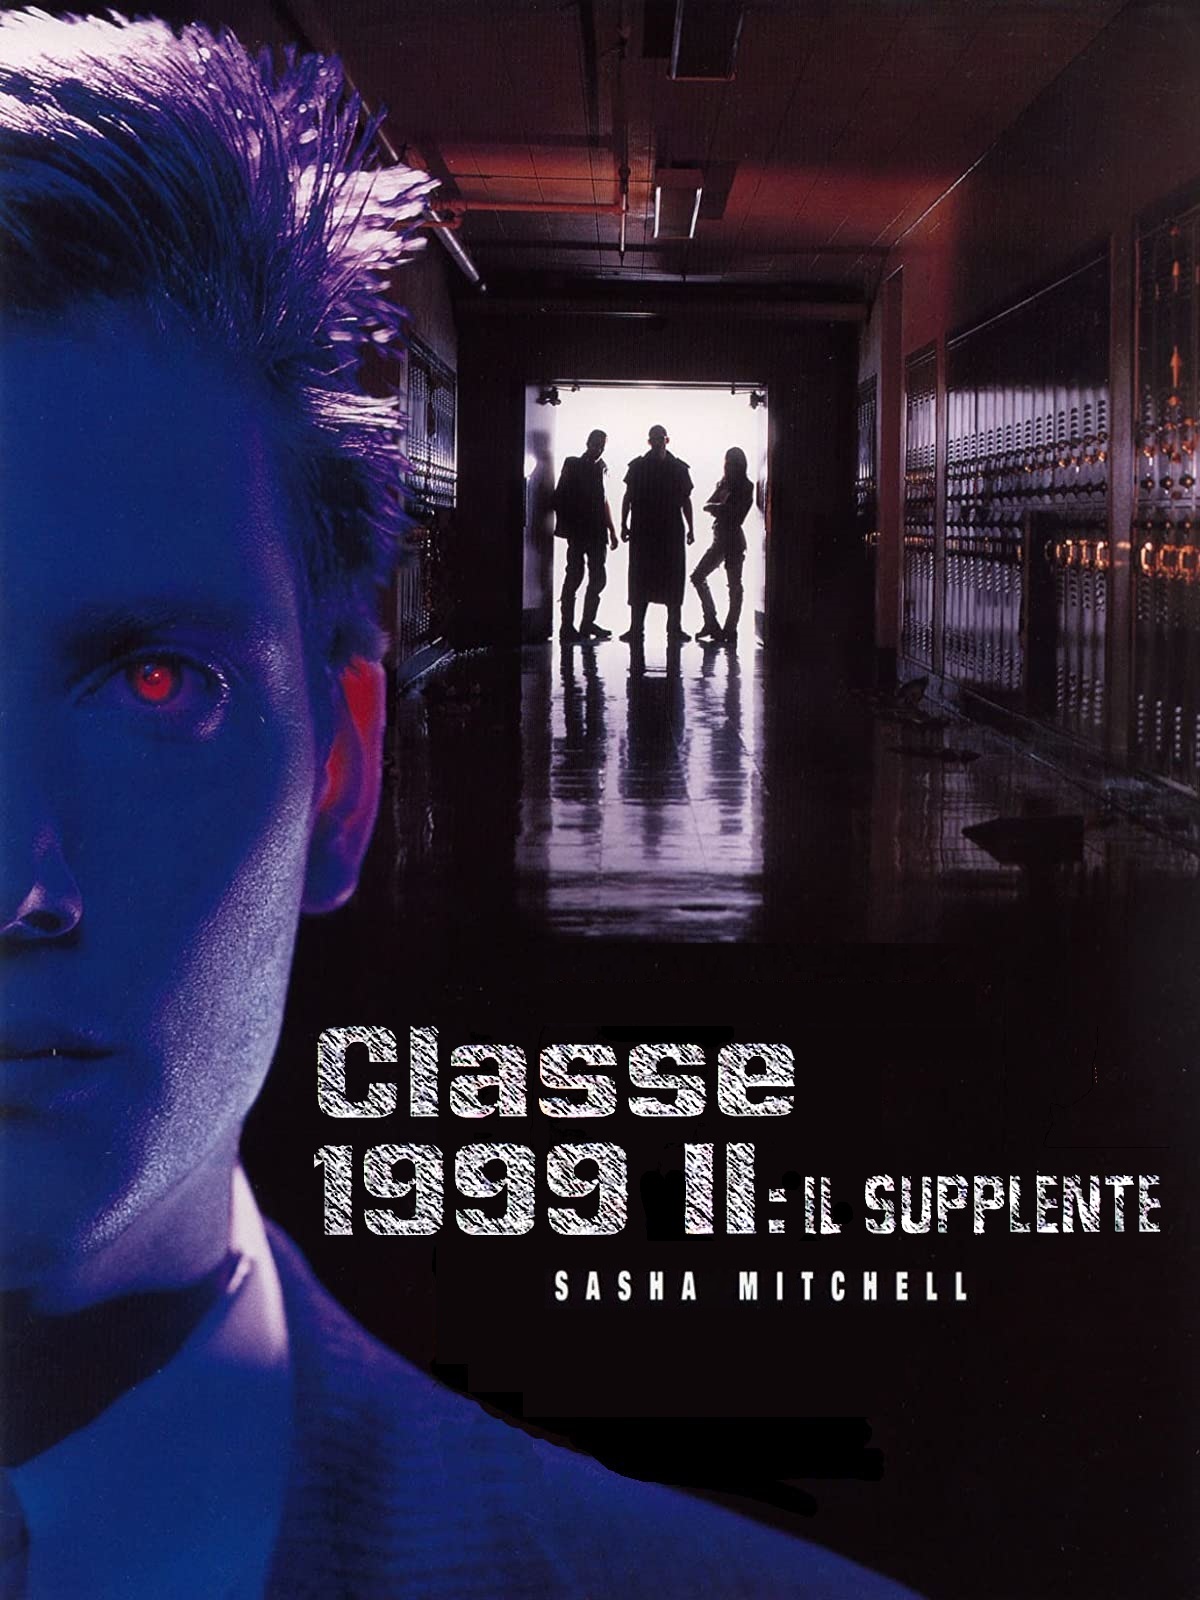 Classe 1999 II – Il supplente (1994)